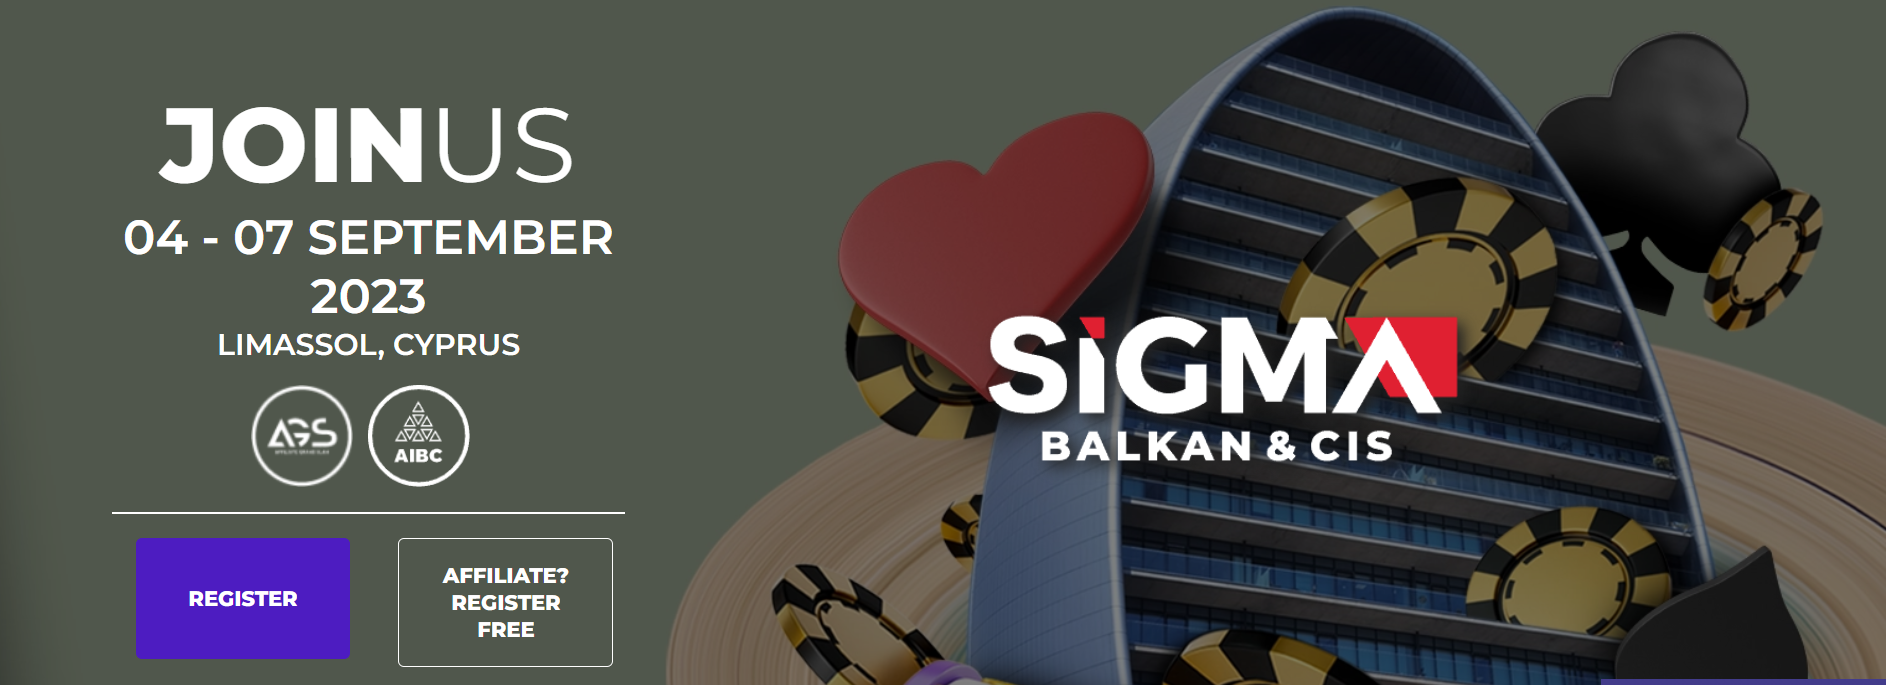 Присоединяйтесь к SiGMA Balkan & CIS